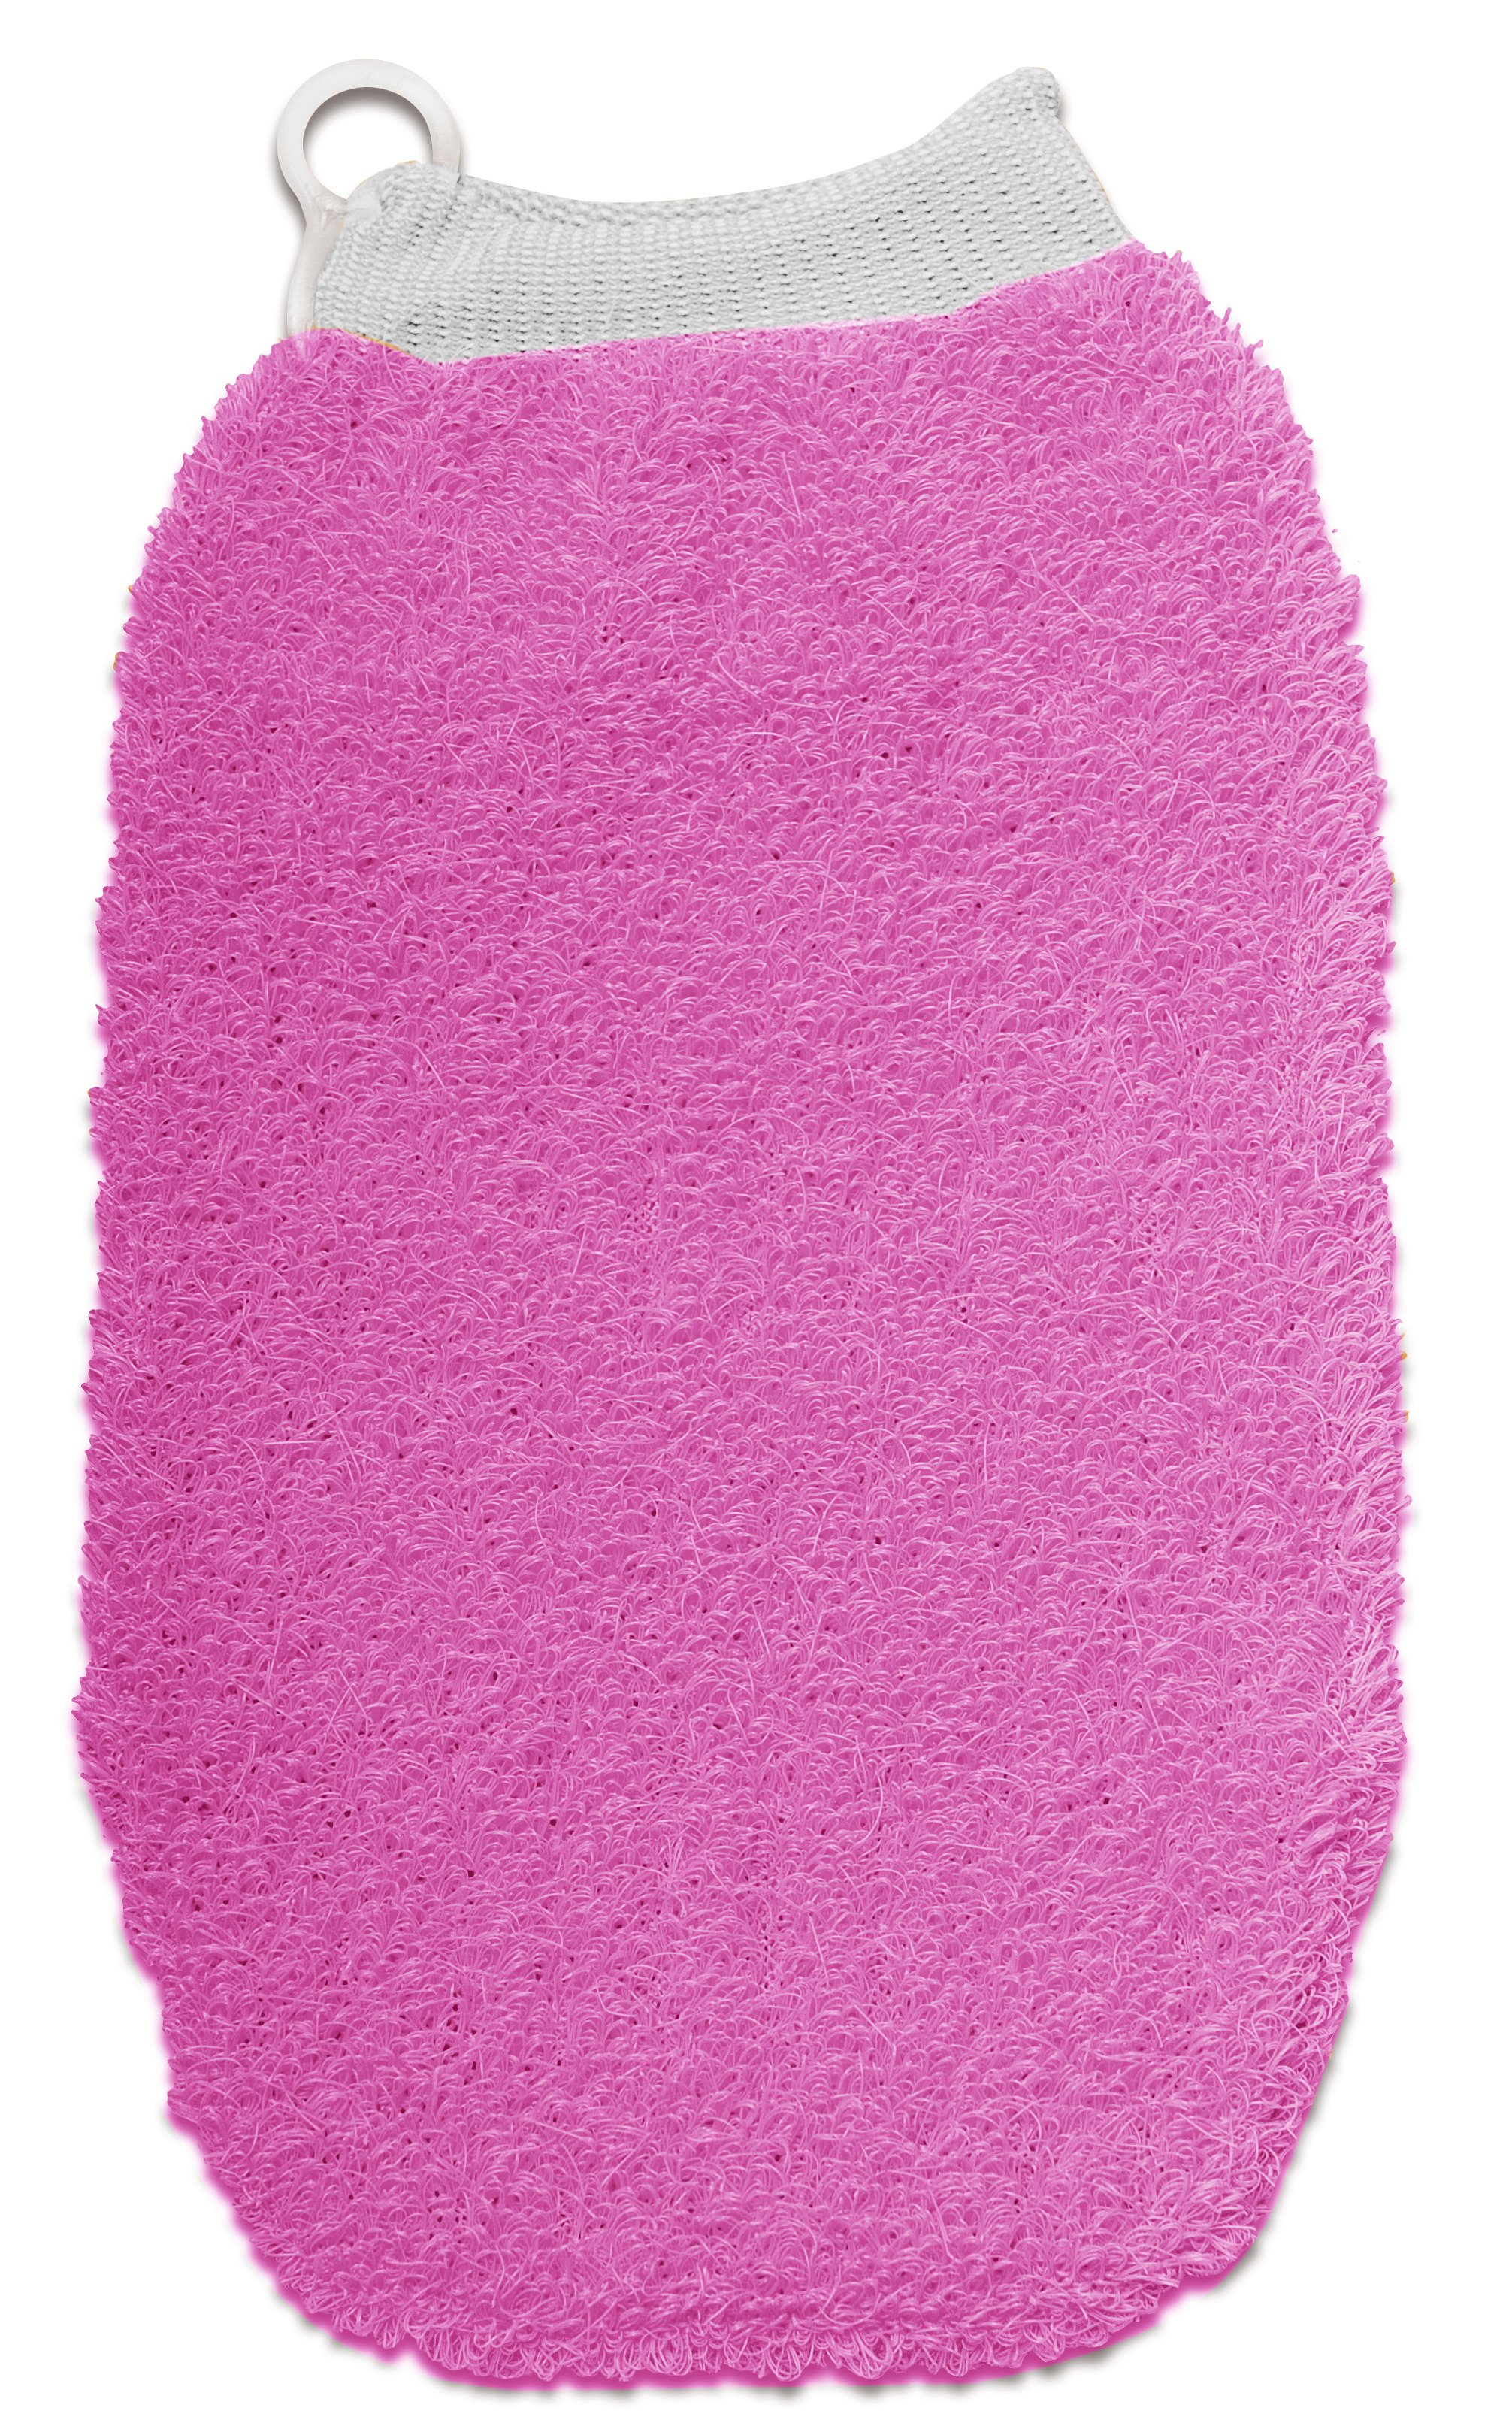 Мочалка банная массажная Titania Рукавичка, 22,5 см, малиновый (9100 малин) - фото 1